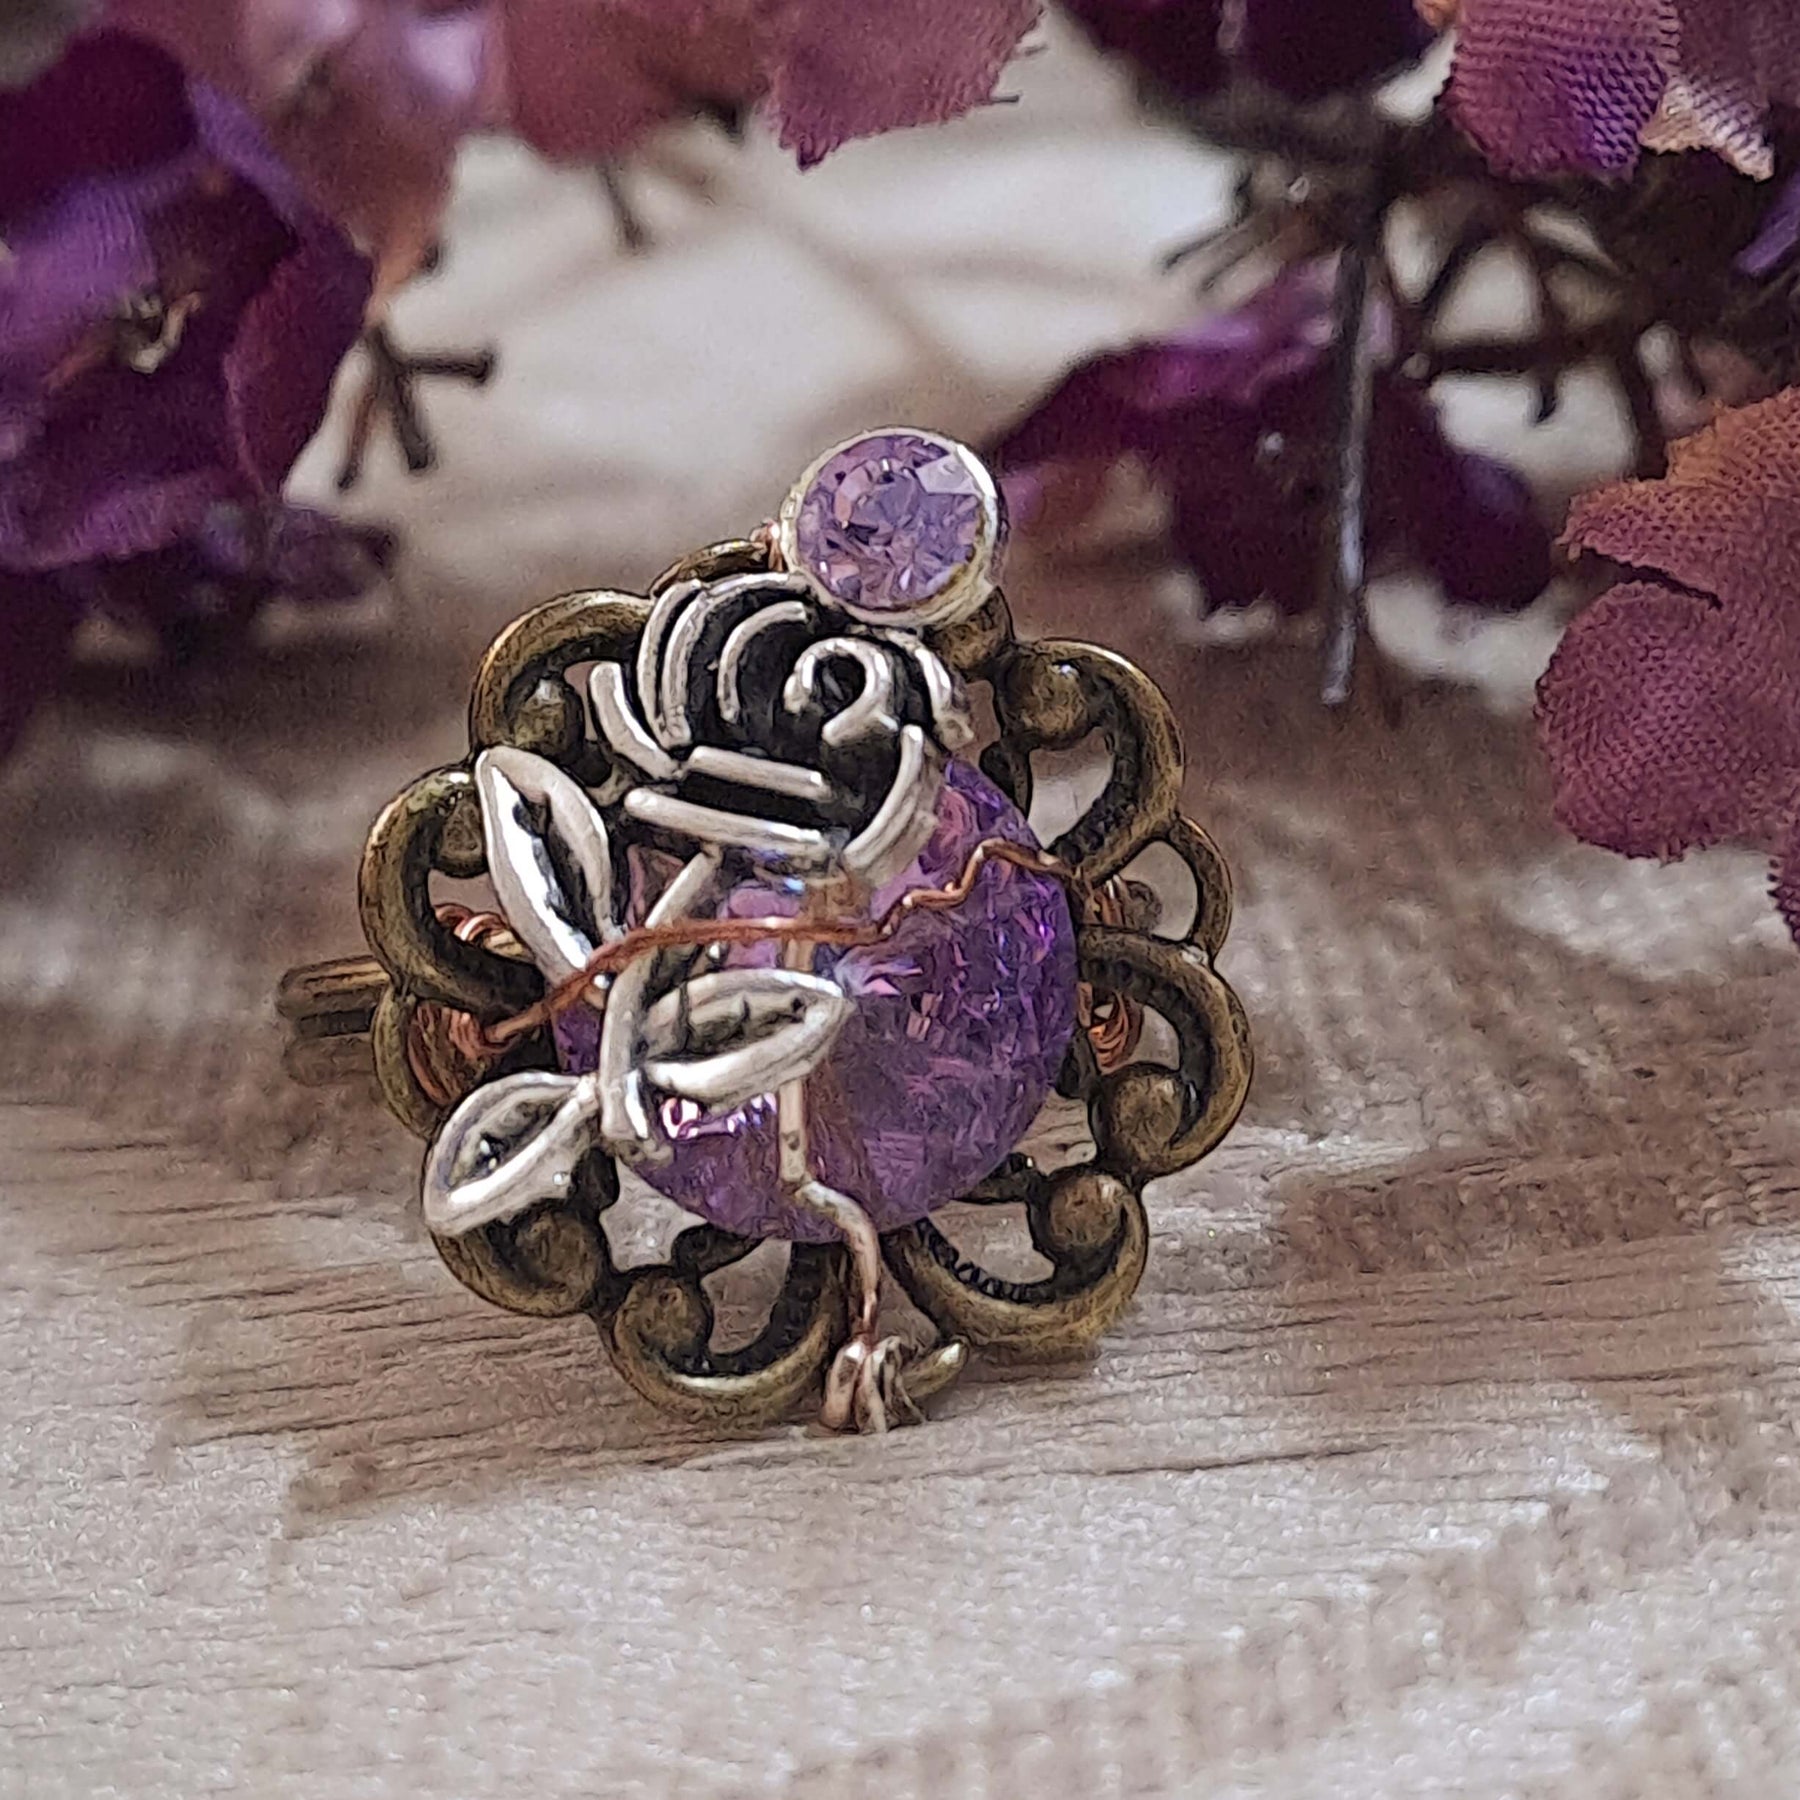 Purple Crystal Rose Adjustable Ring